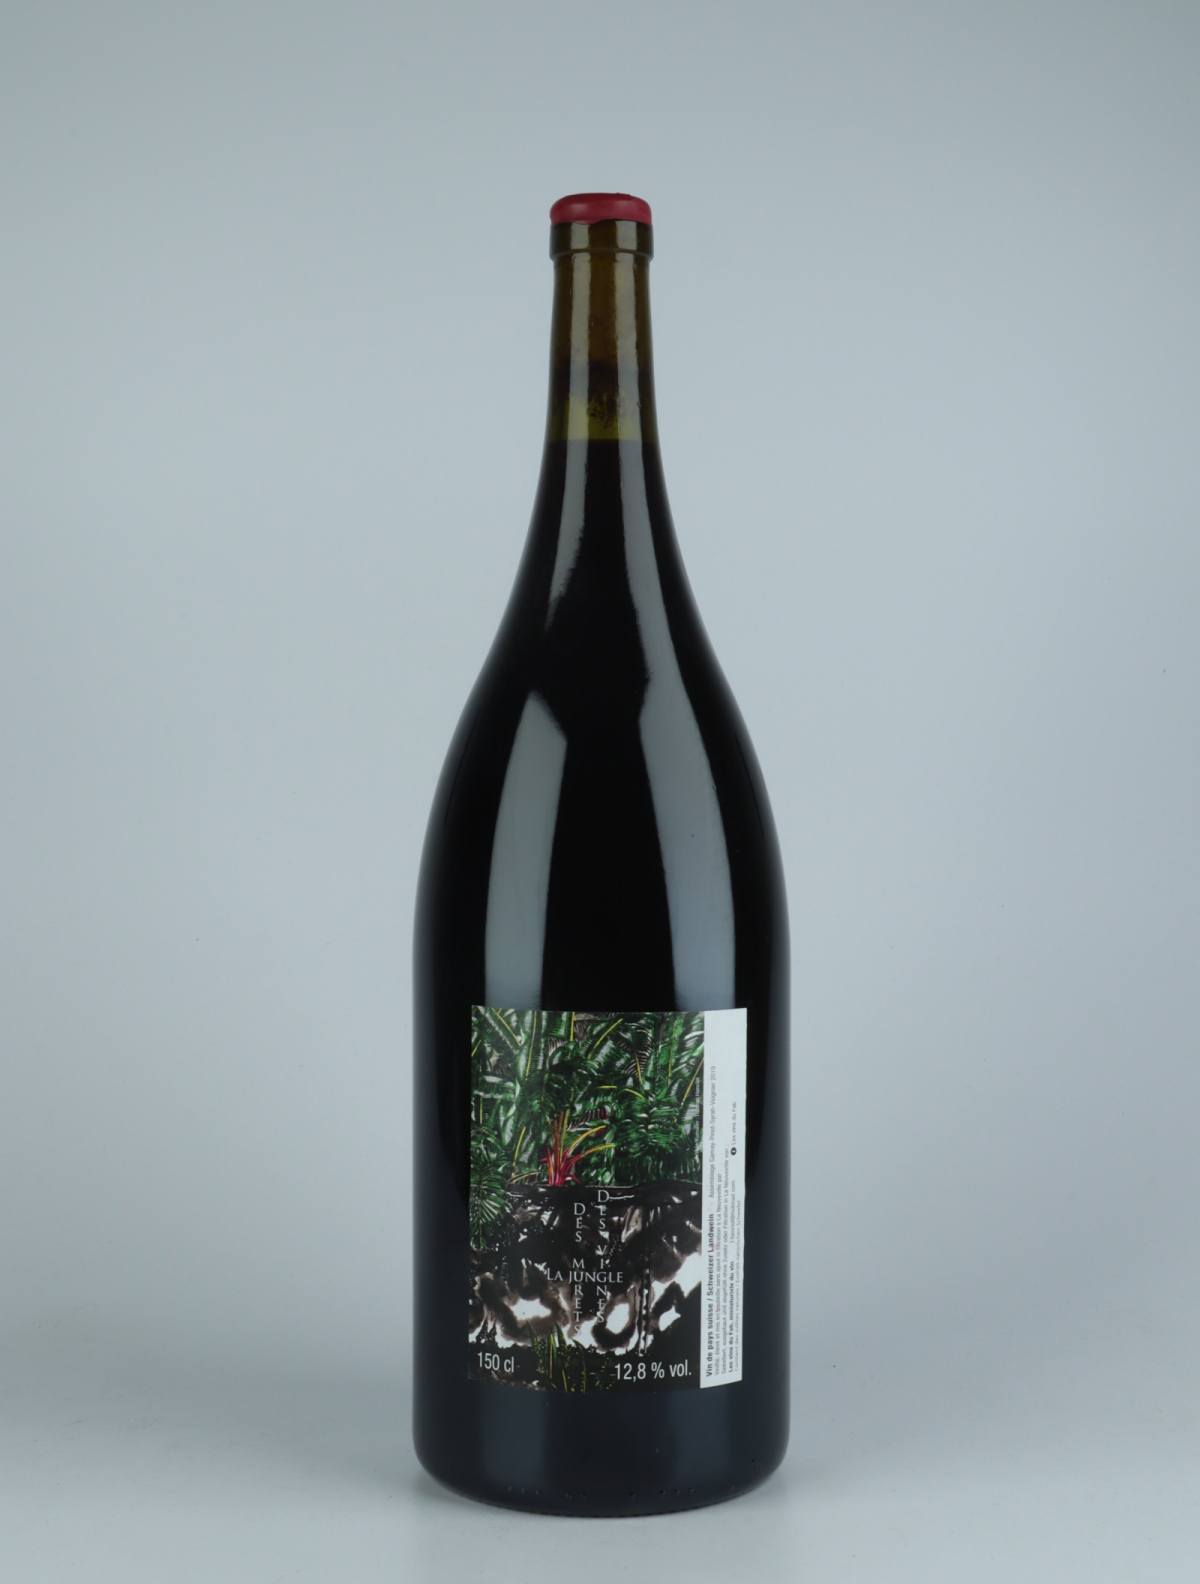 En flaske 2019 Des Murets, des Vignes, la Jungle Rødvin fra Les Vins du Fab, Neuchâtel i Schweiz